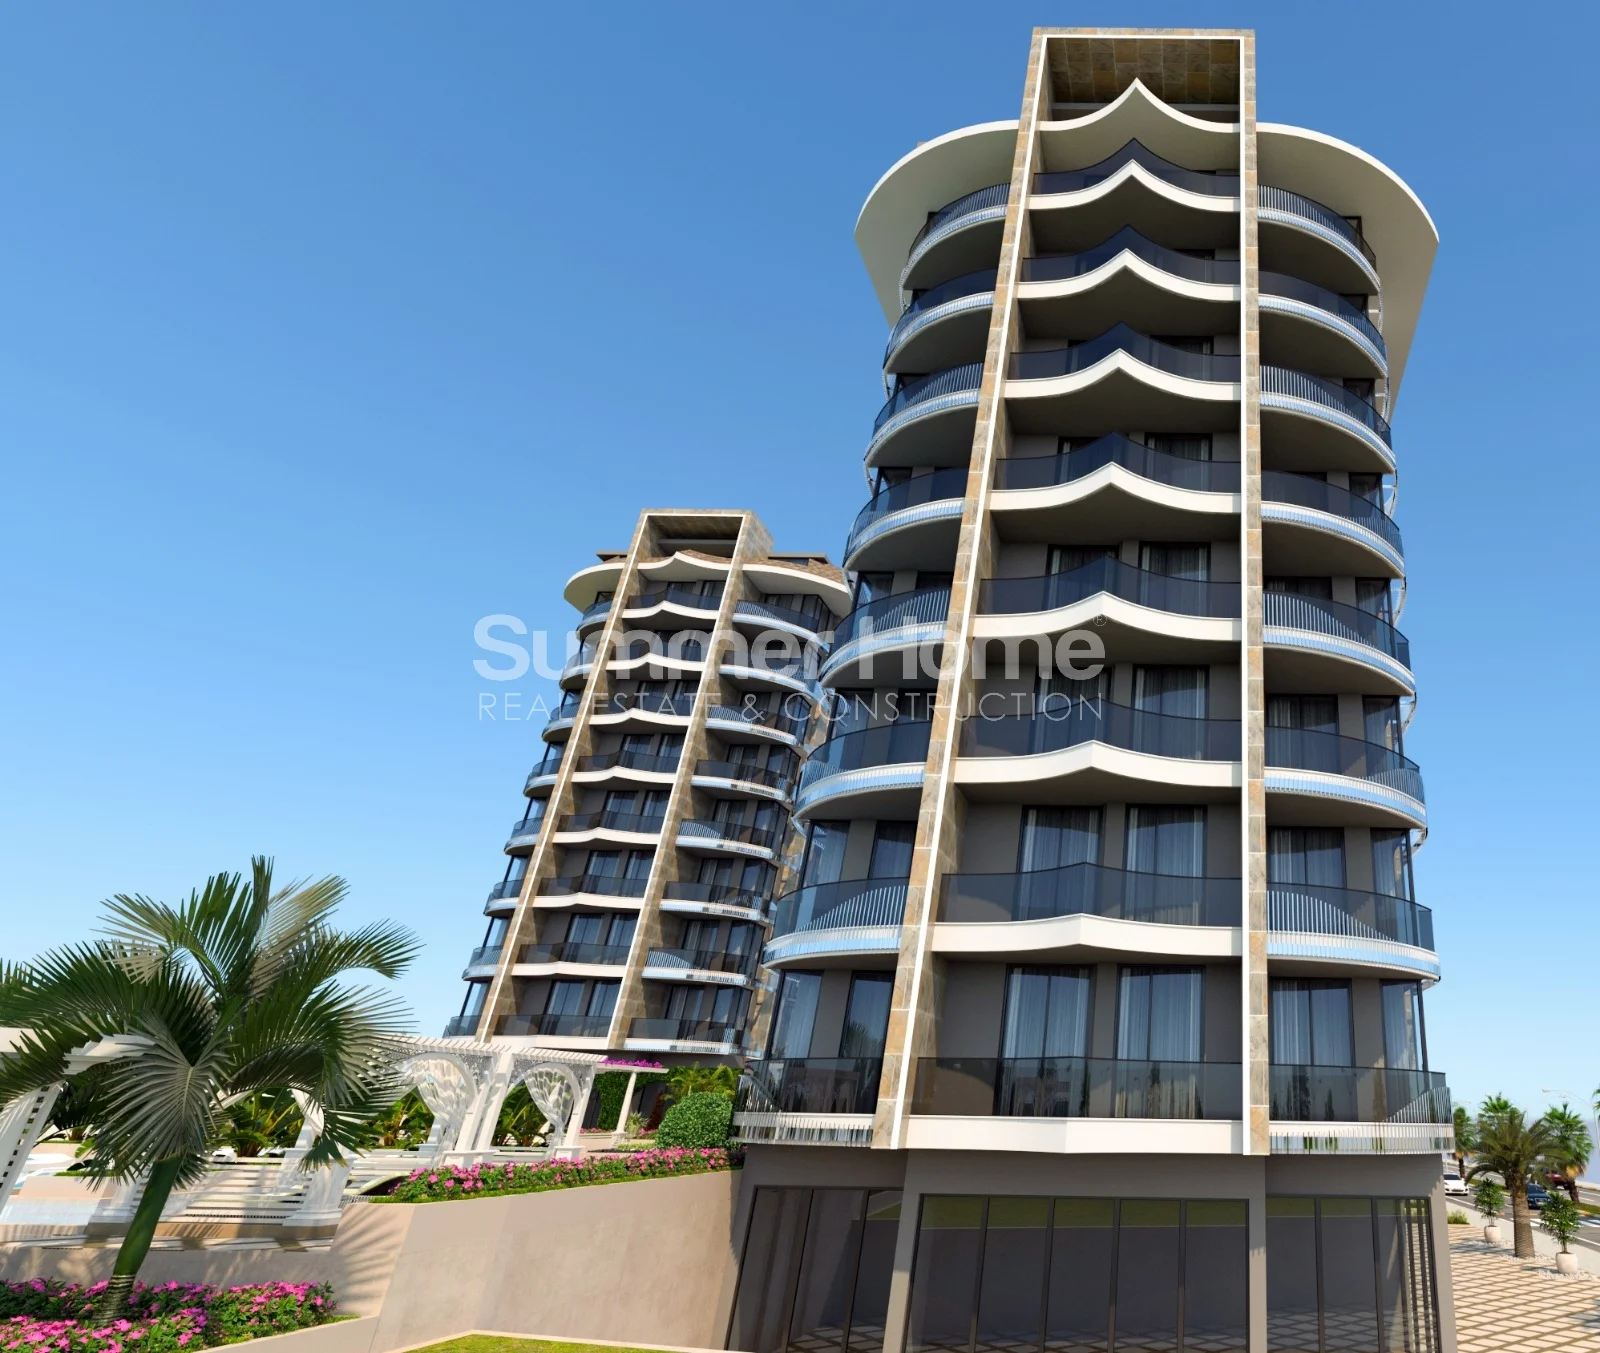 Apartamente moderne me pamje nga deti në Tosmurin e mrekullueshëm general - 8